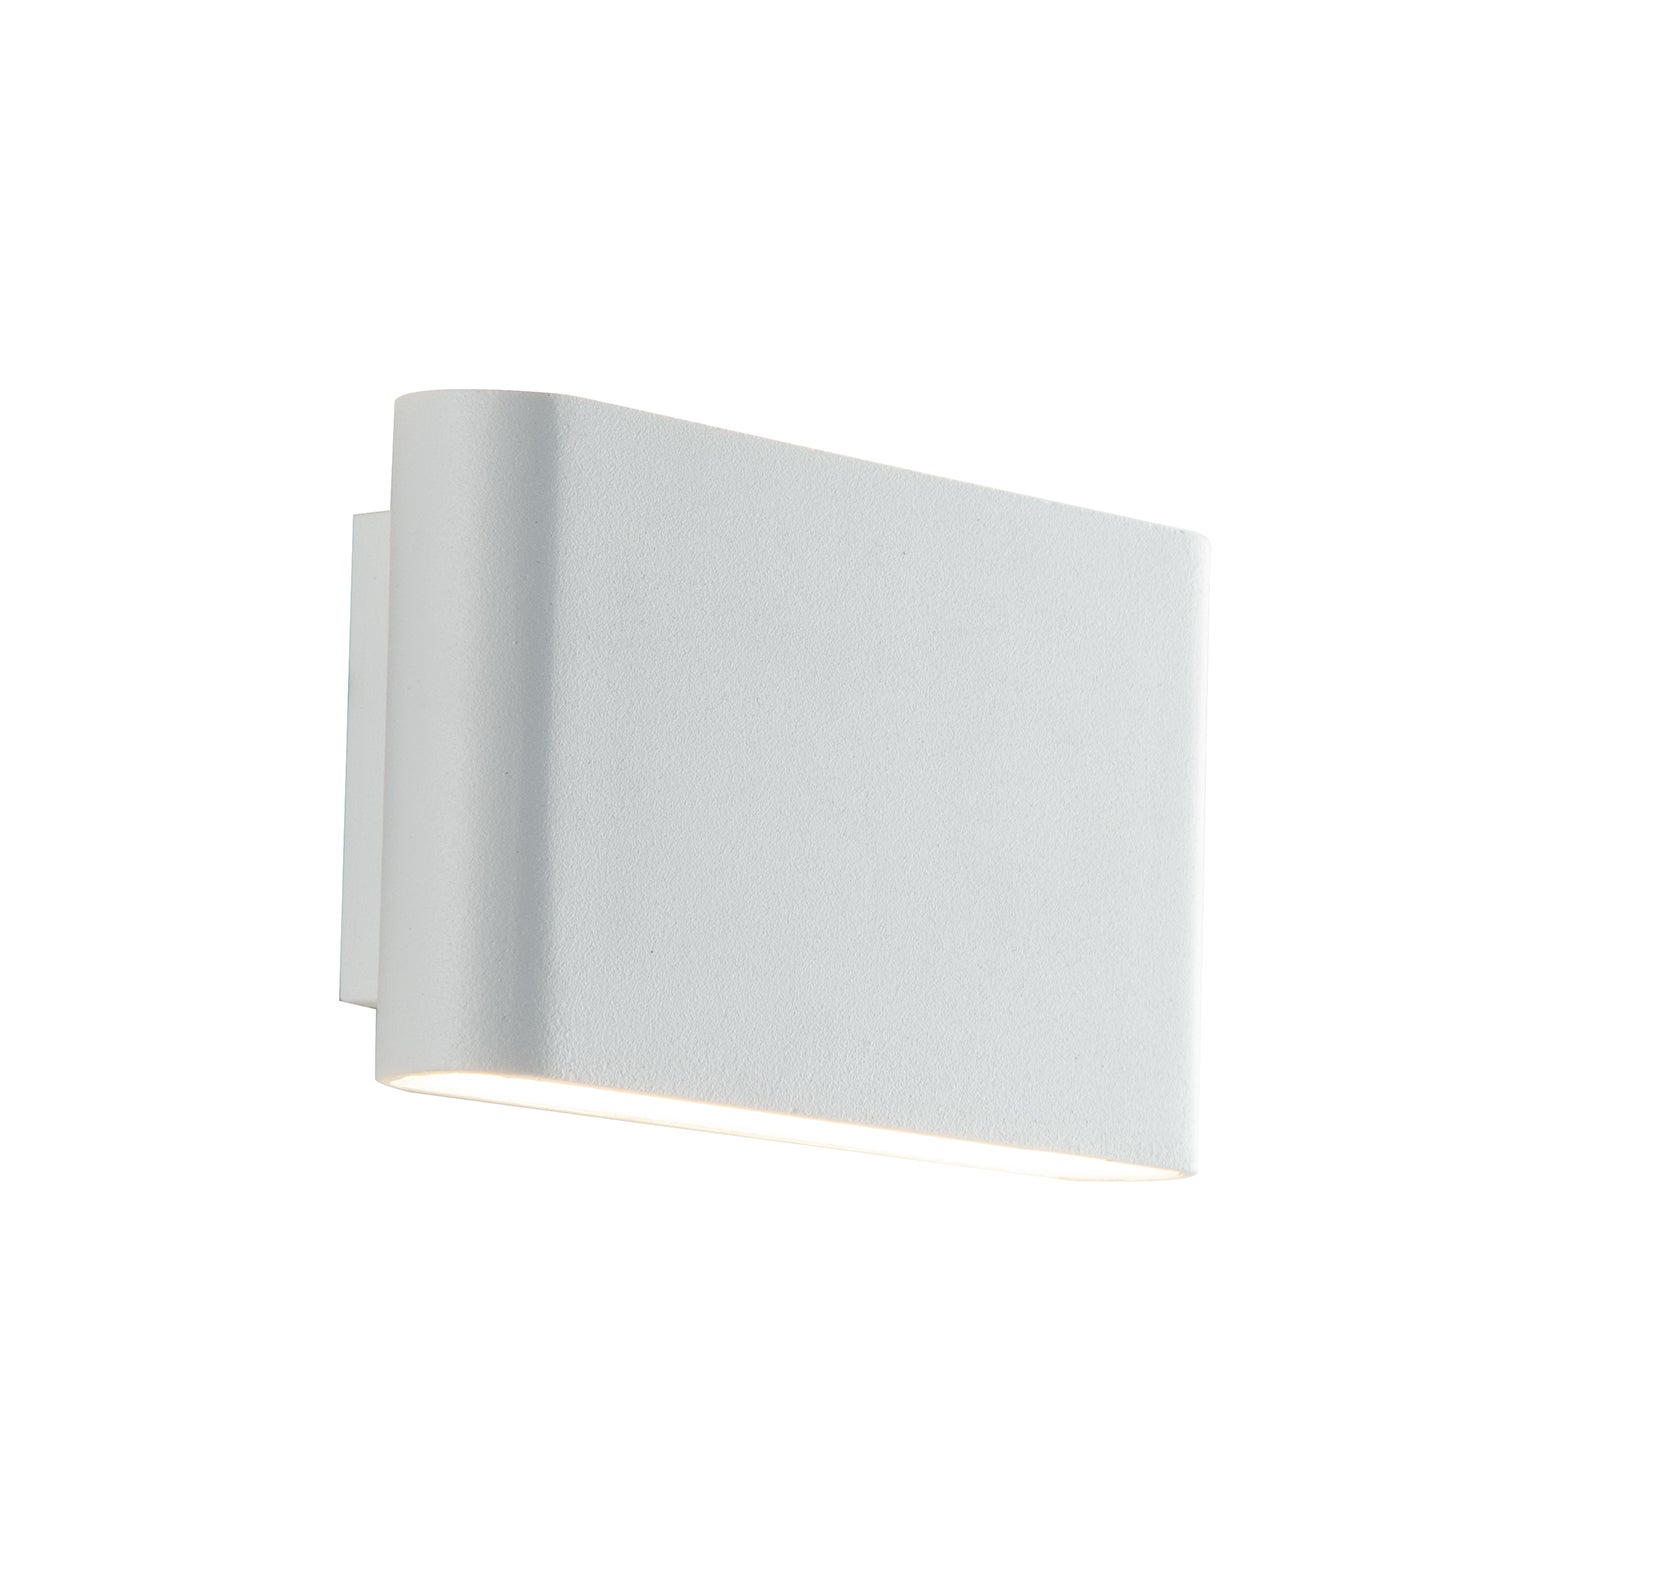 Gamma aplique de exterior led blanco en aluminio 3000 4000k (luz cálida y natural) ip54 9x17x4cm.